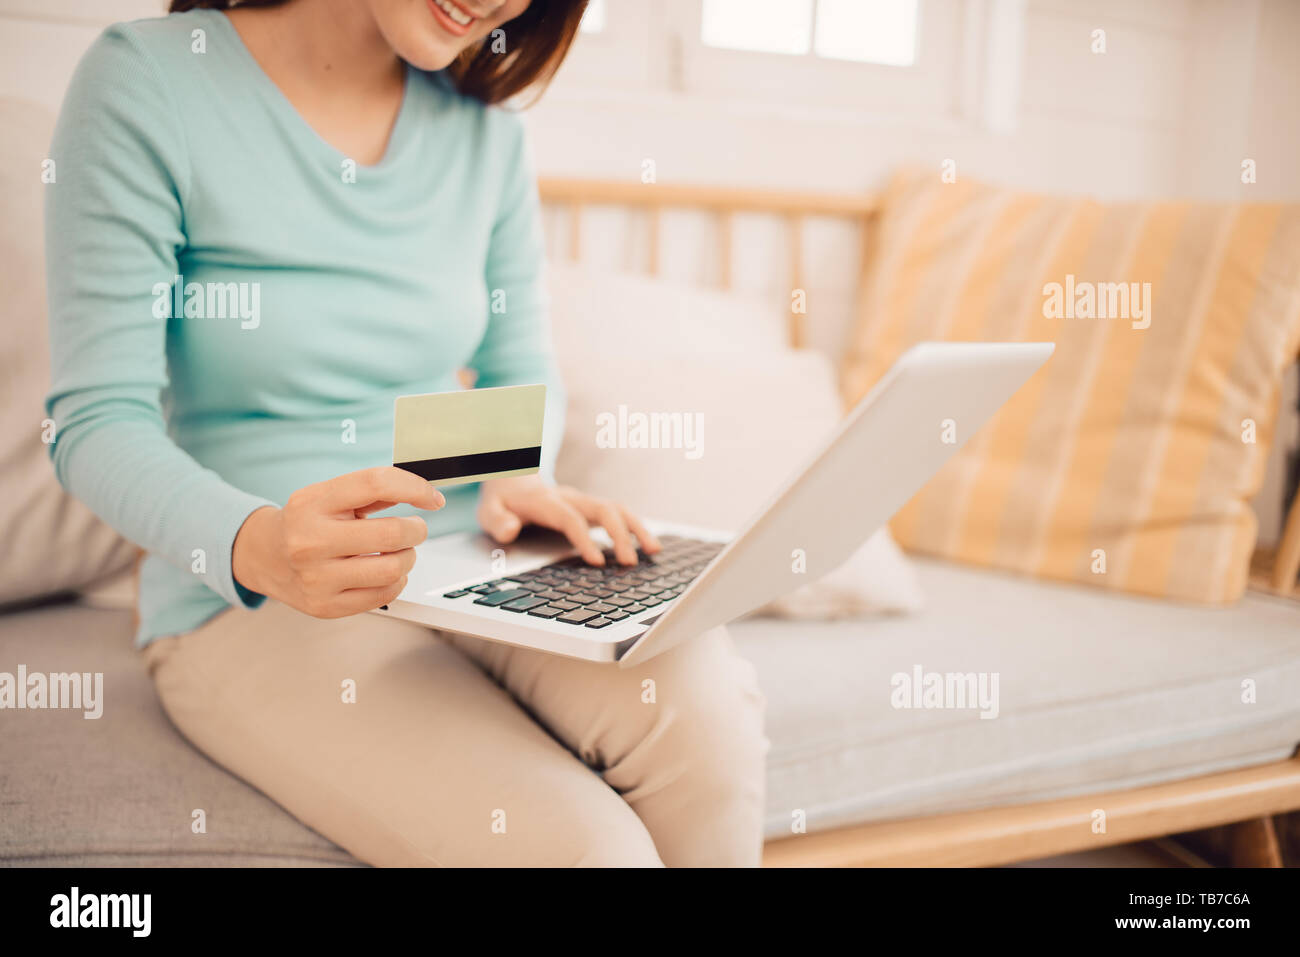 La clientèle féminine acheter des biens dans un magasin d'Internet, en utilisant une carte de crédit pour faire des achats en ligne à la maison Banque D'Images